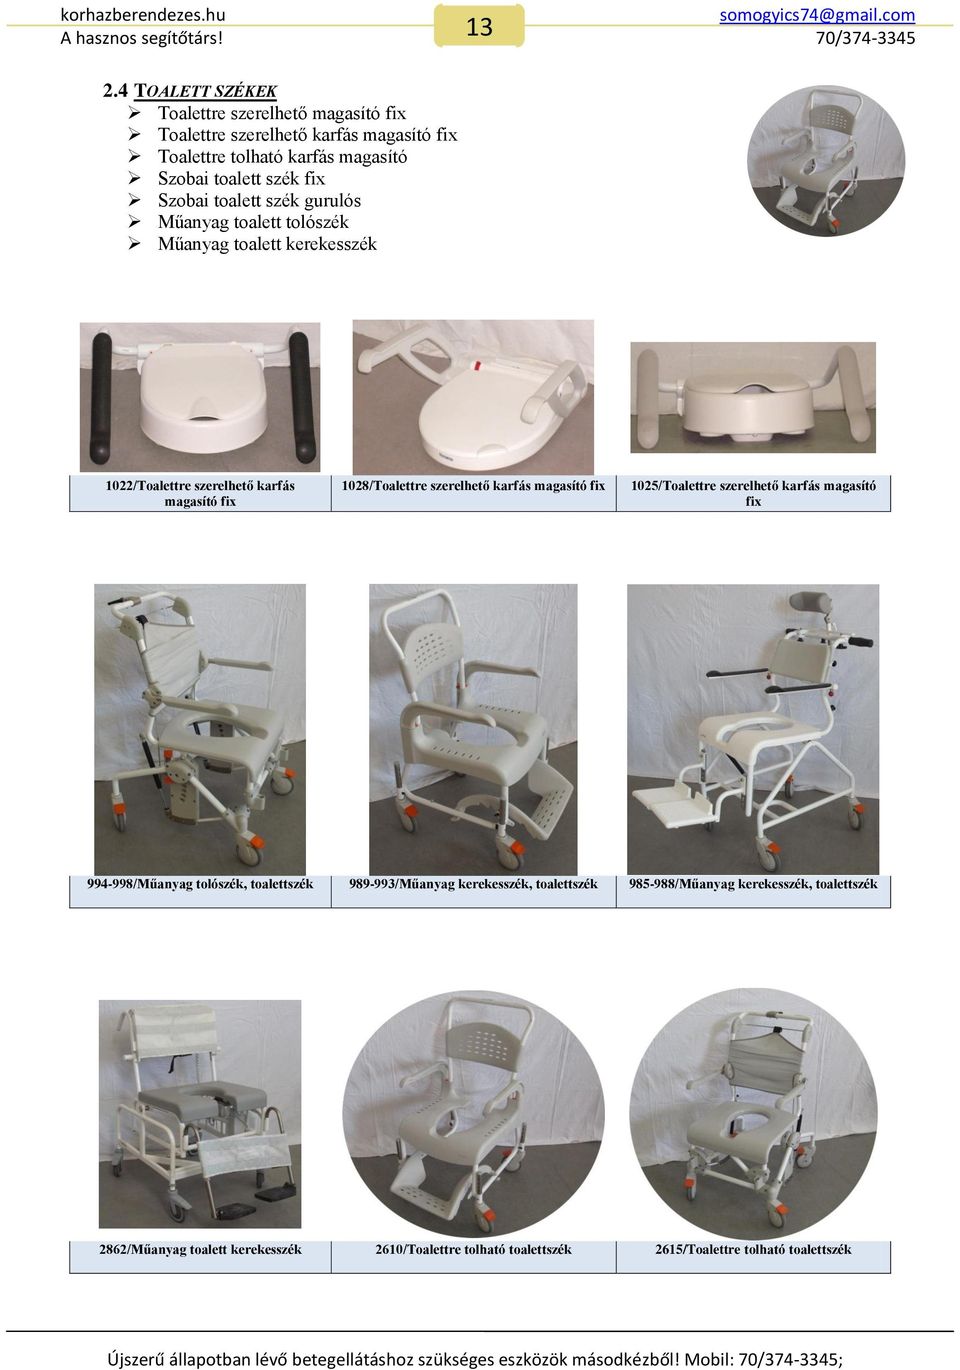 1025/Toalettre szerelhető karfás magasító fix 994-998/Műanyag tolószék, toalettszék 989-993/Műanyag kerekesszék, toalettszék 985-988/Műanyag kerekesszék, toalettszék